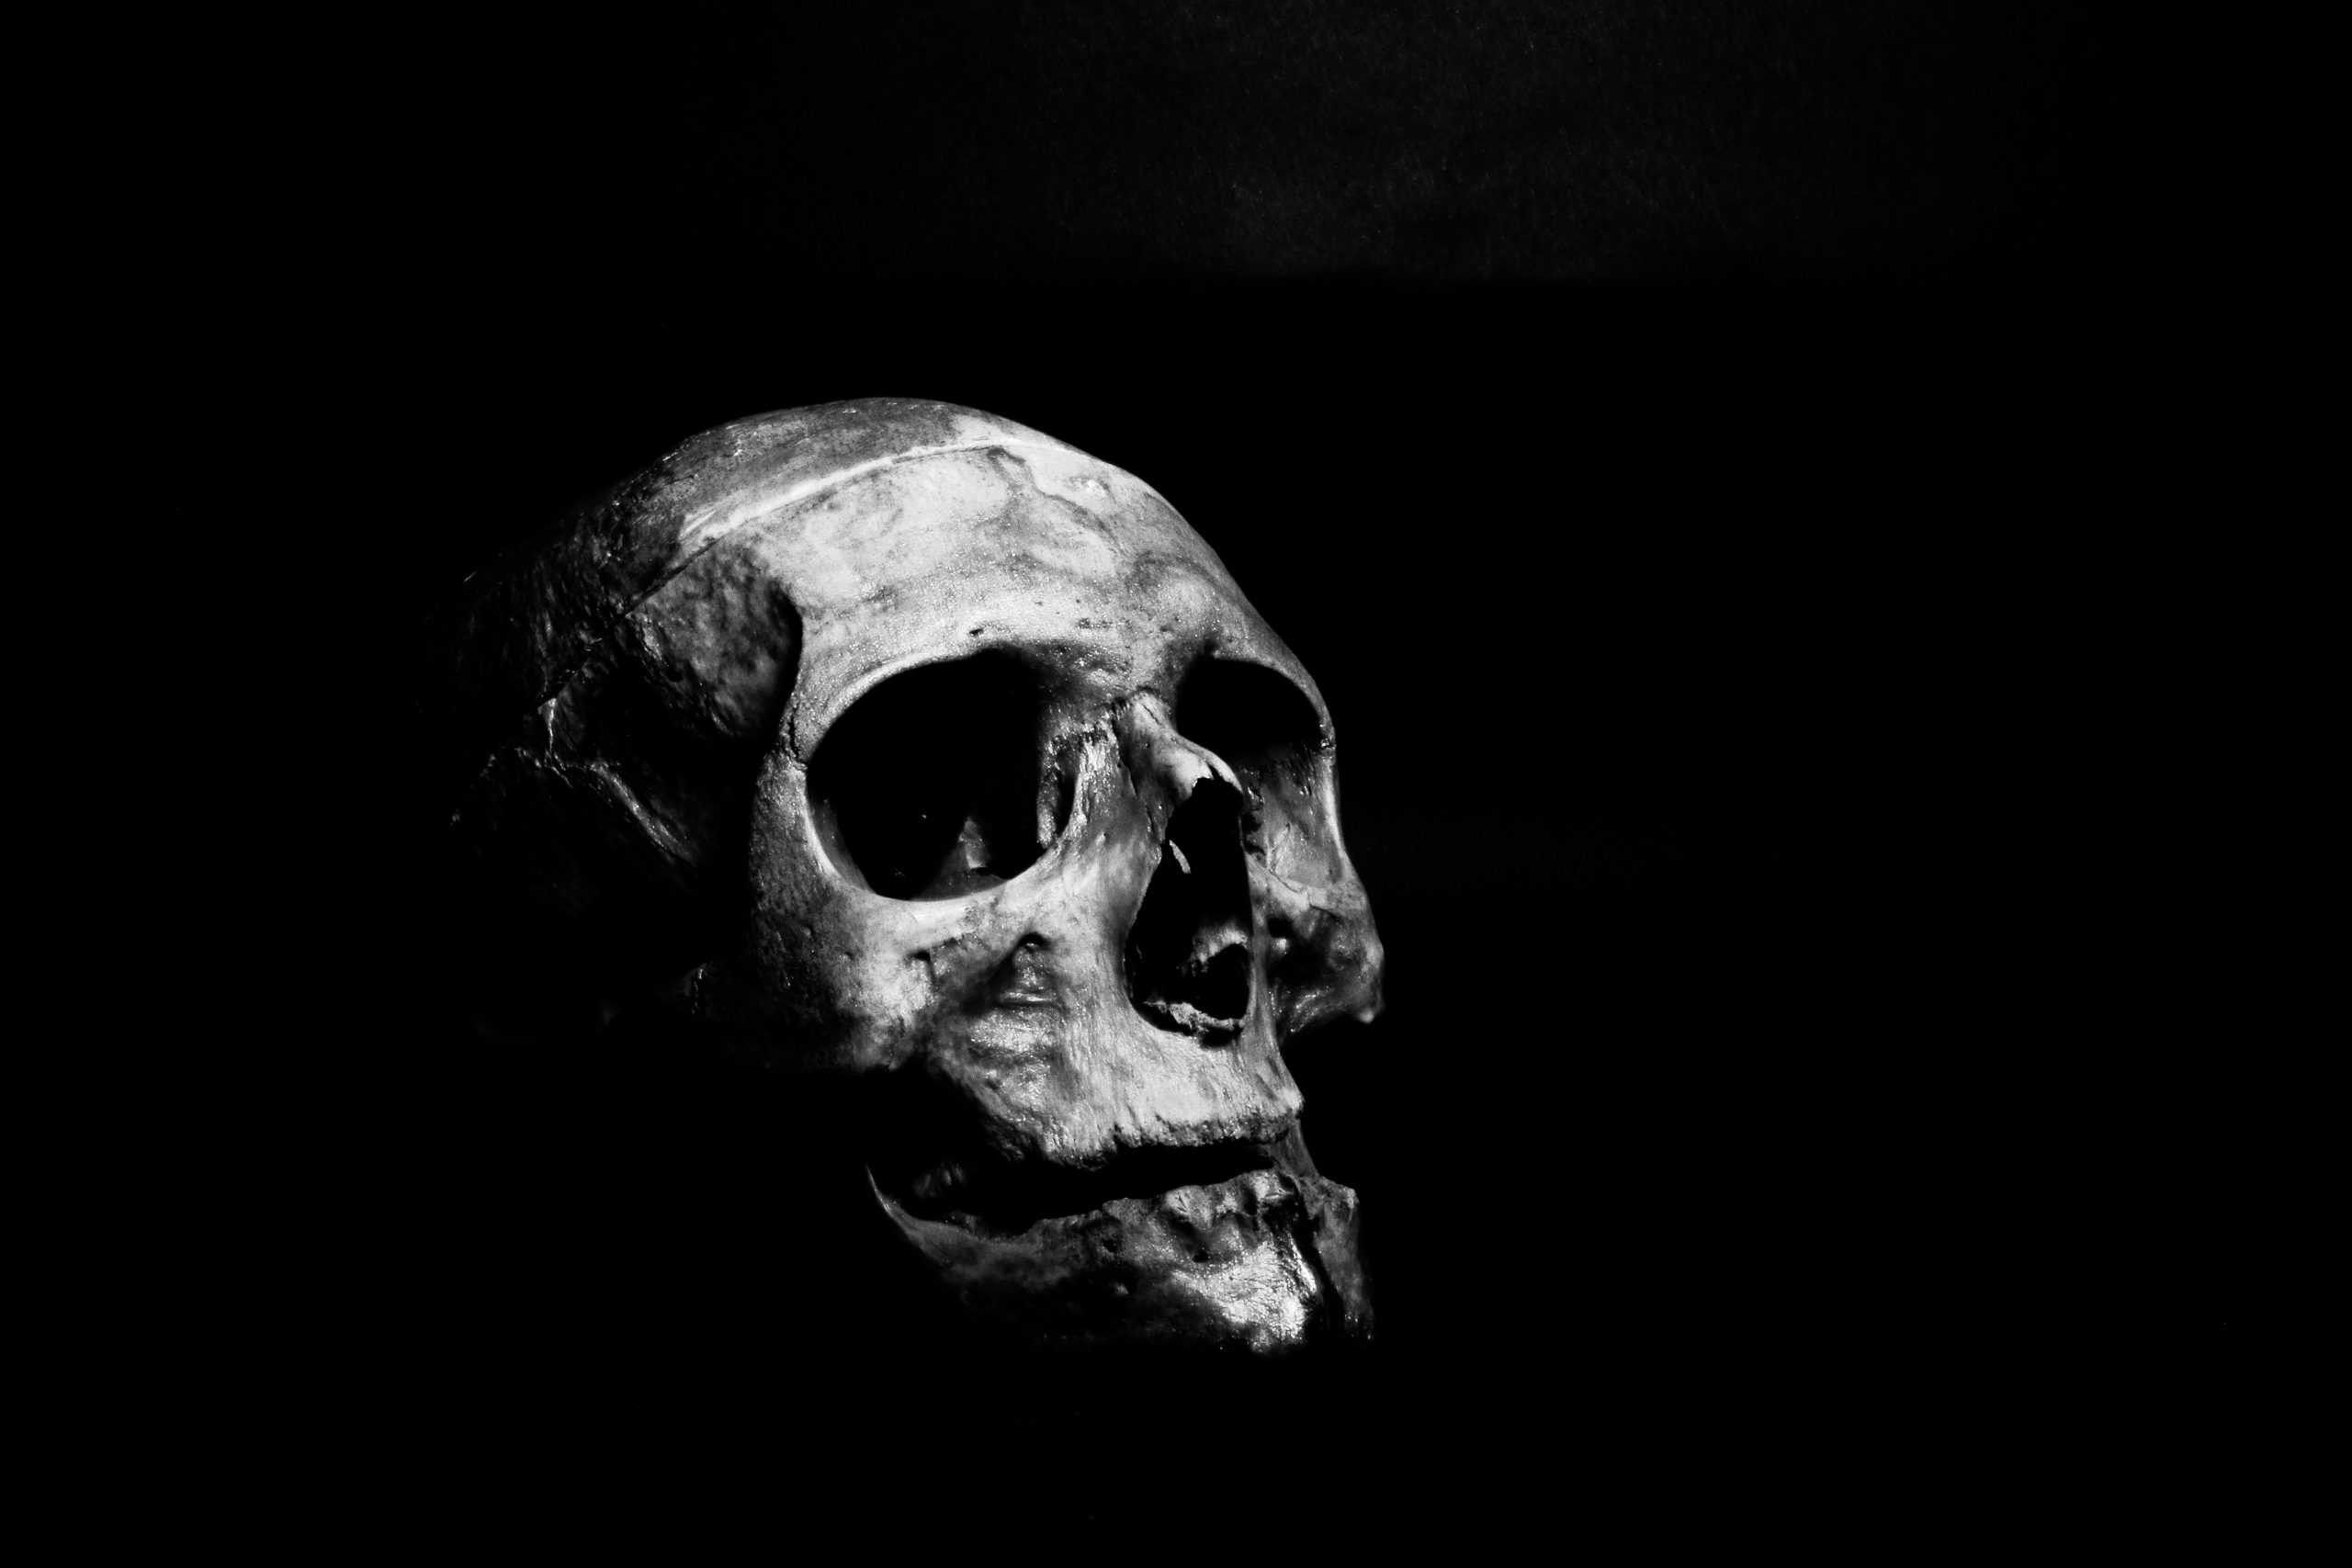 White Skull on a Black Background